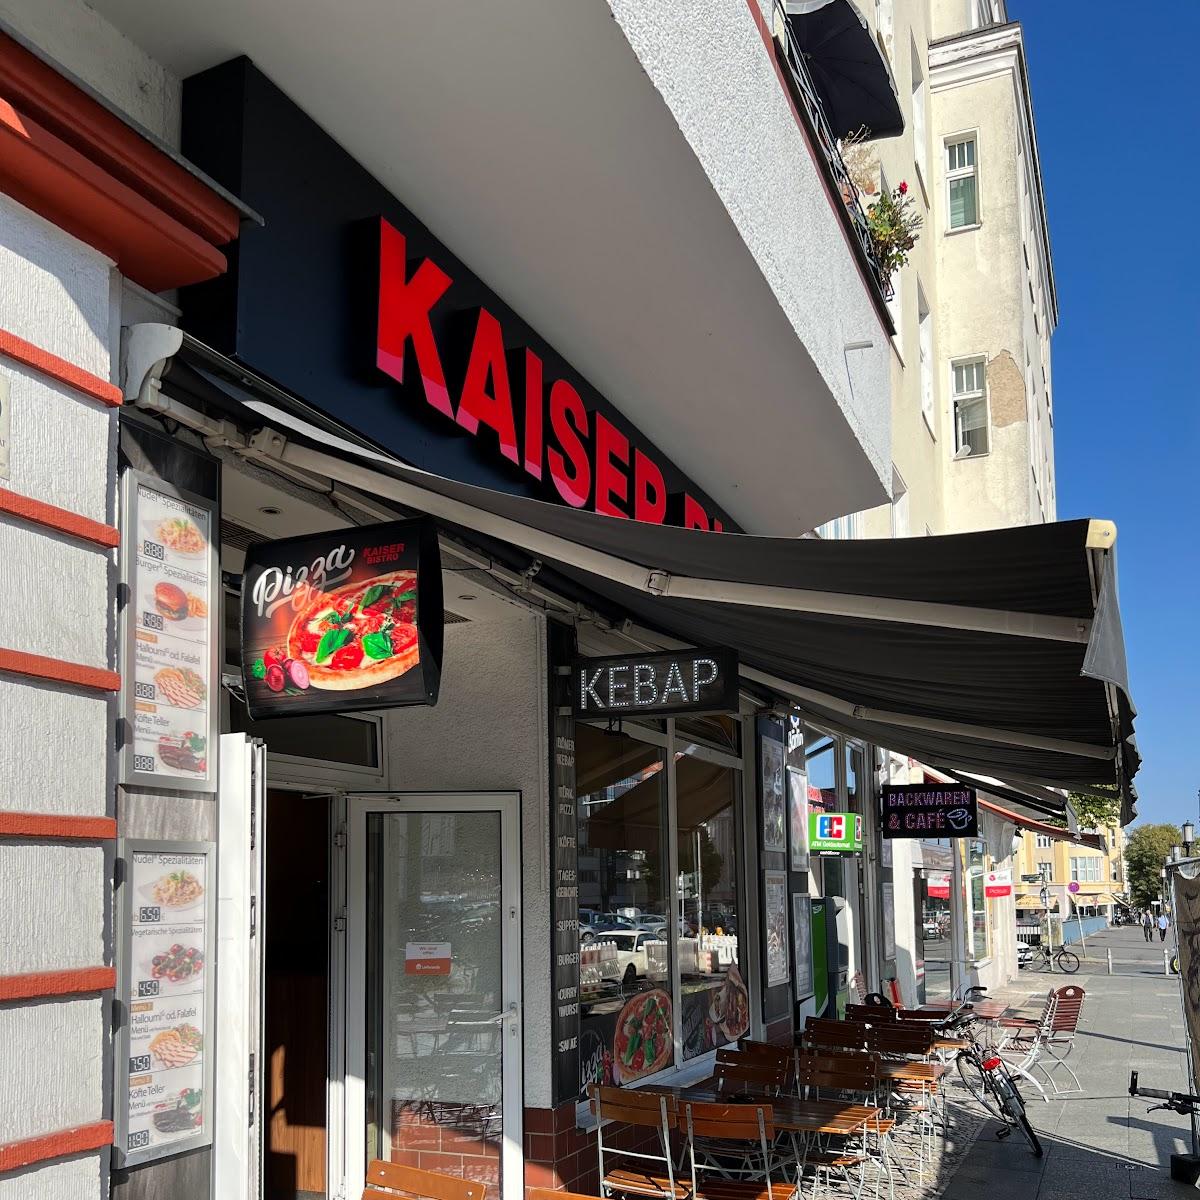 Restaurant "Kaiser Bistro" in Berlin